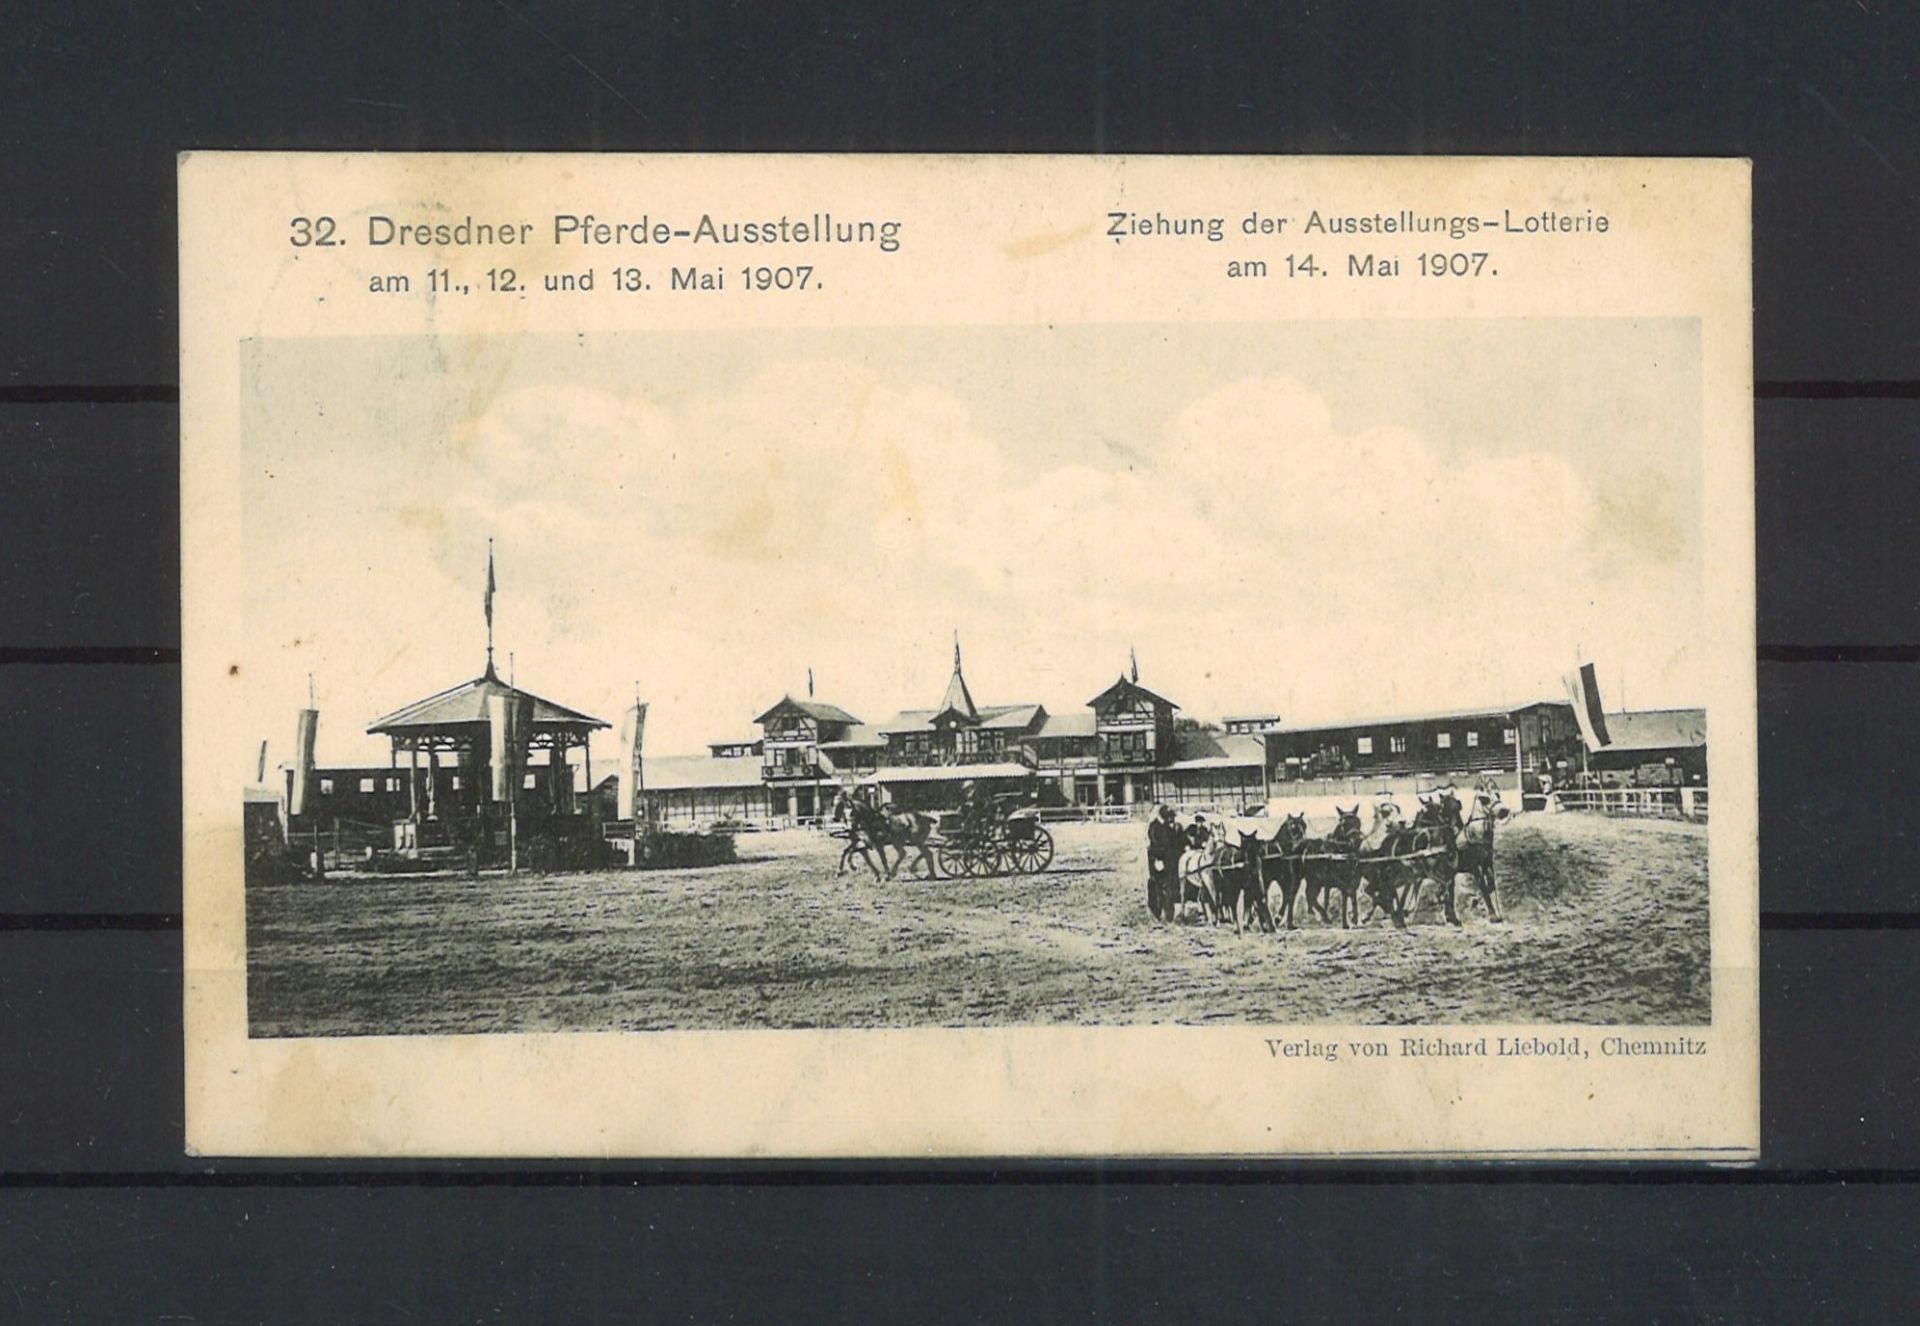 Postkarte "32. Dresdner Pferde-Ausstellung am 11., 12. und 13. Mai 1907" Verlag Richard Liebold,